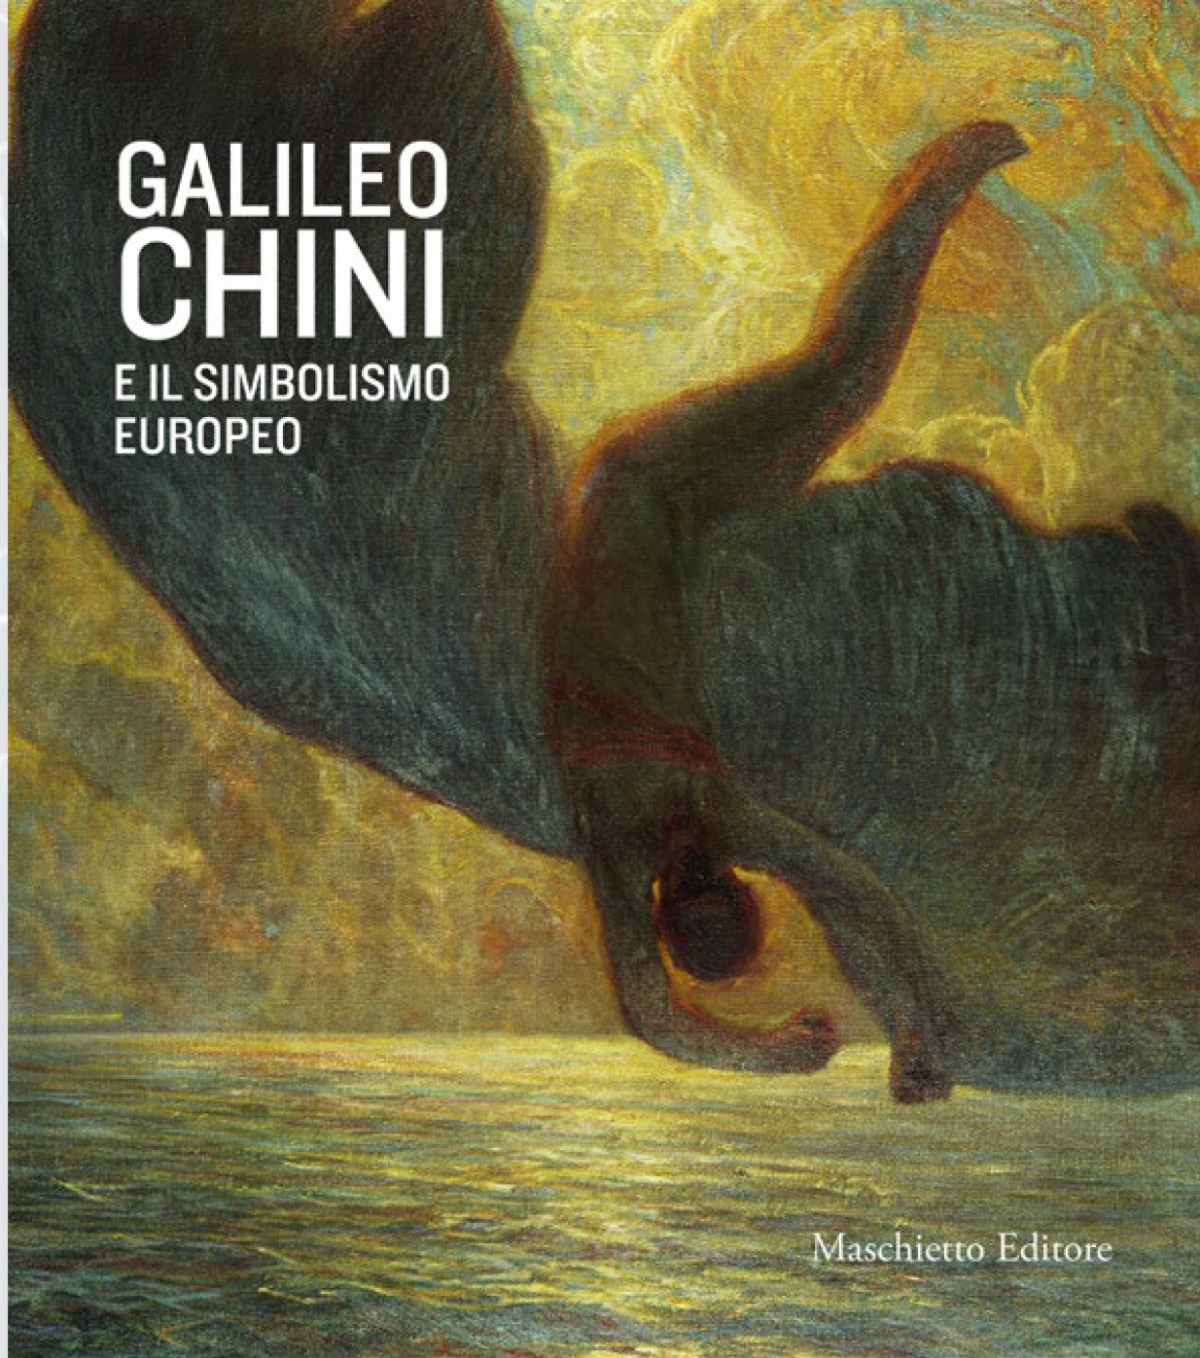 Galileo Chini e il simbolismo europeo